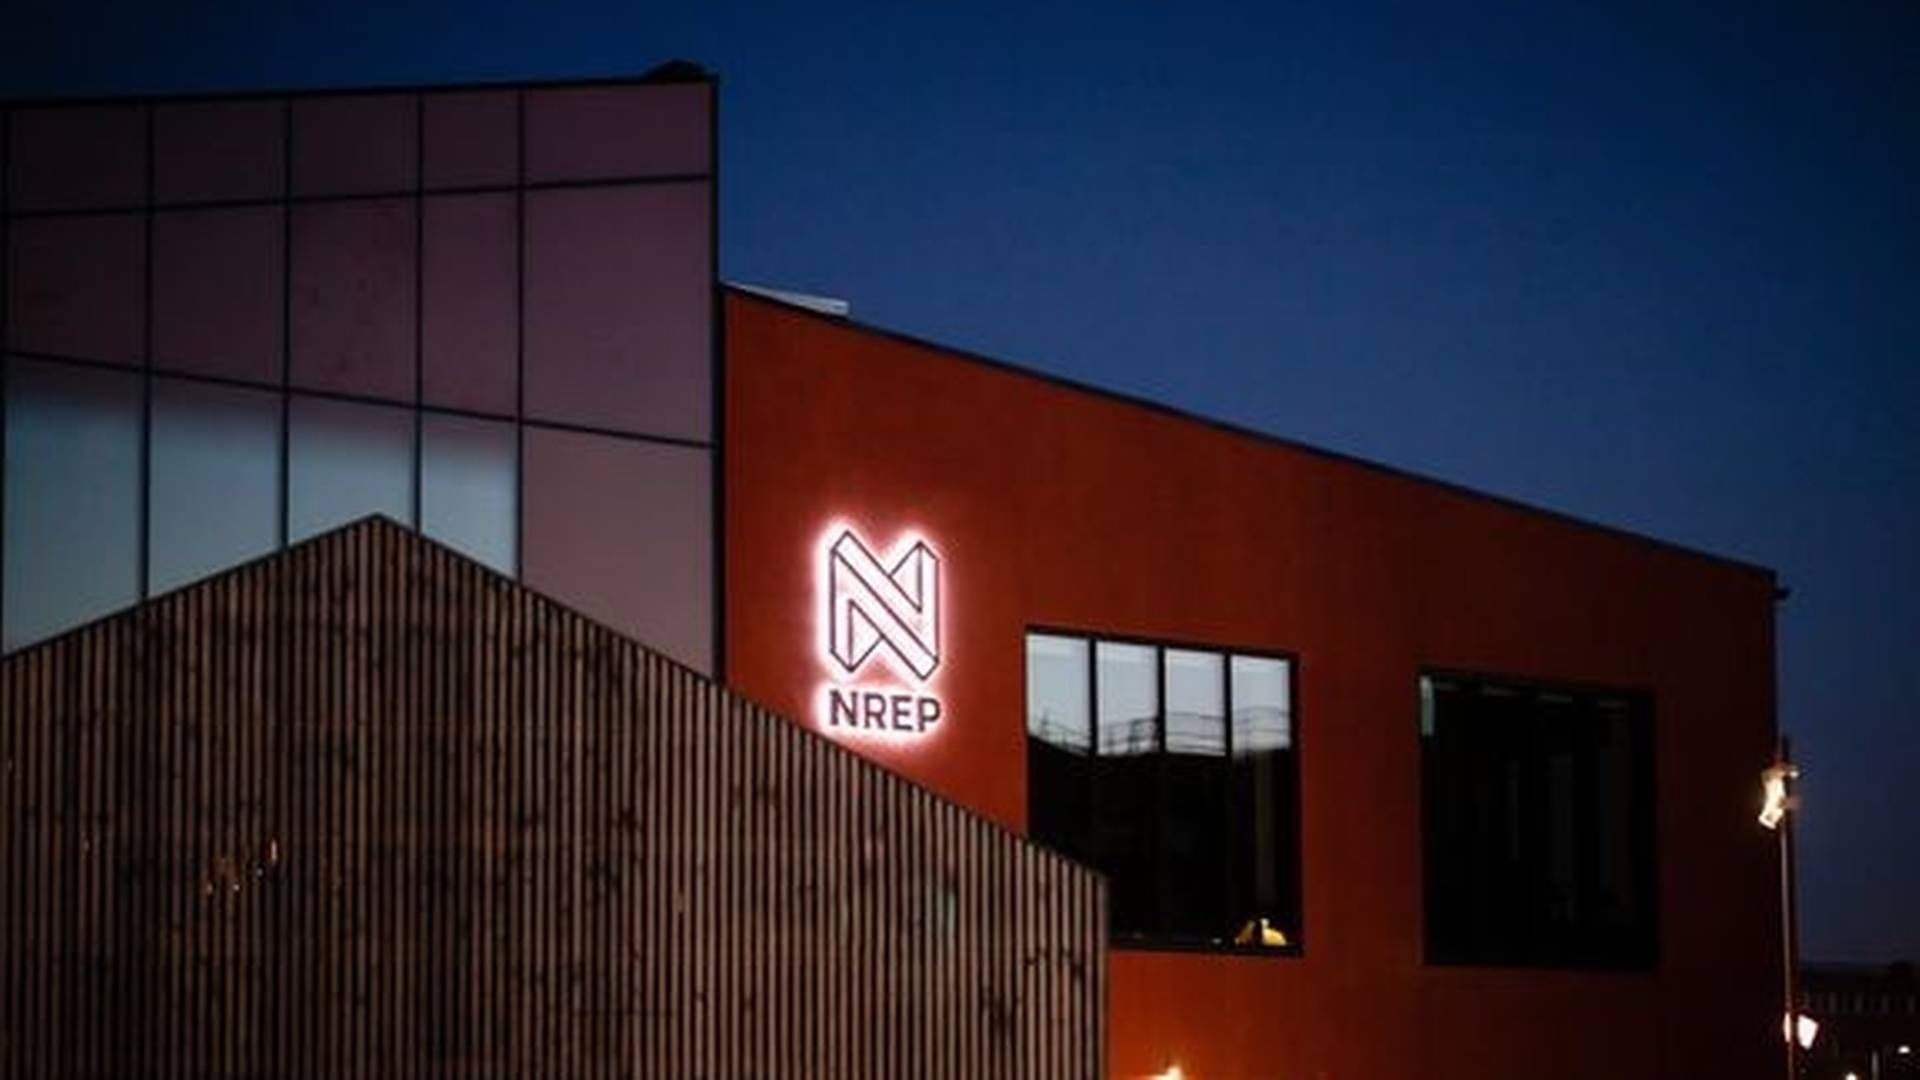 Et underskud på over 400 mio. kr. rammer Nrep, hvor koncernen har skiftet navn til Urban Partners. | Foto: Pr / Nrep